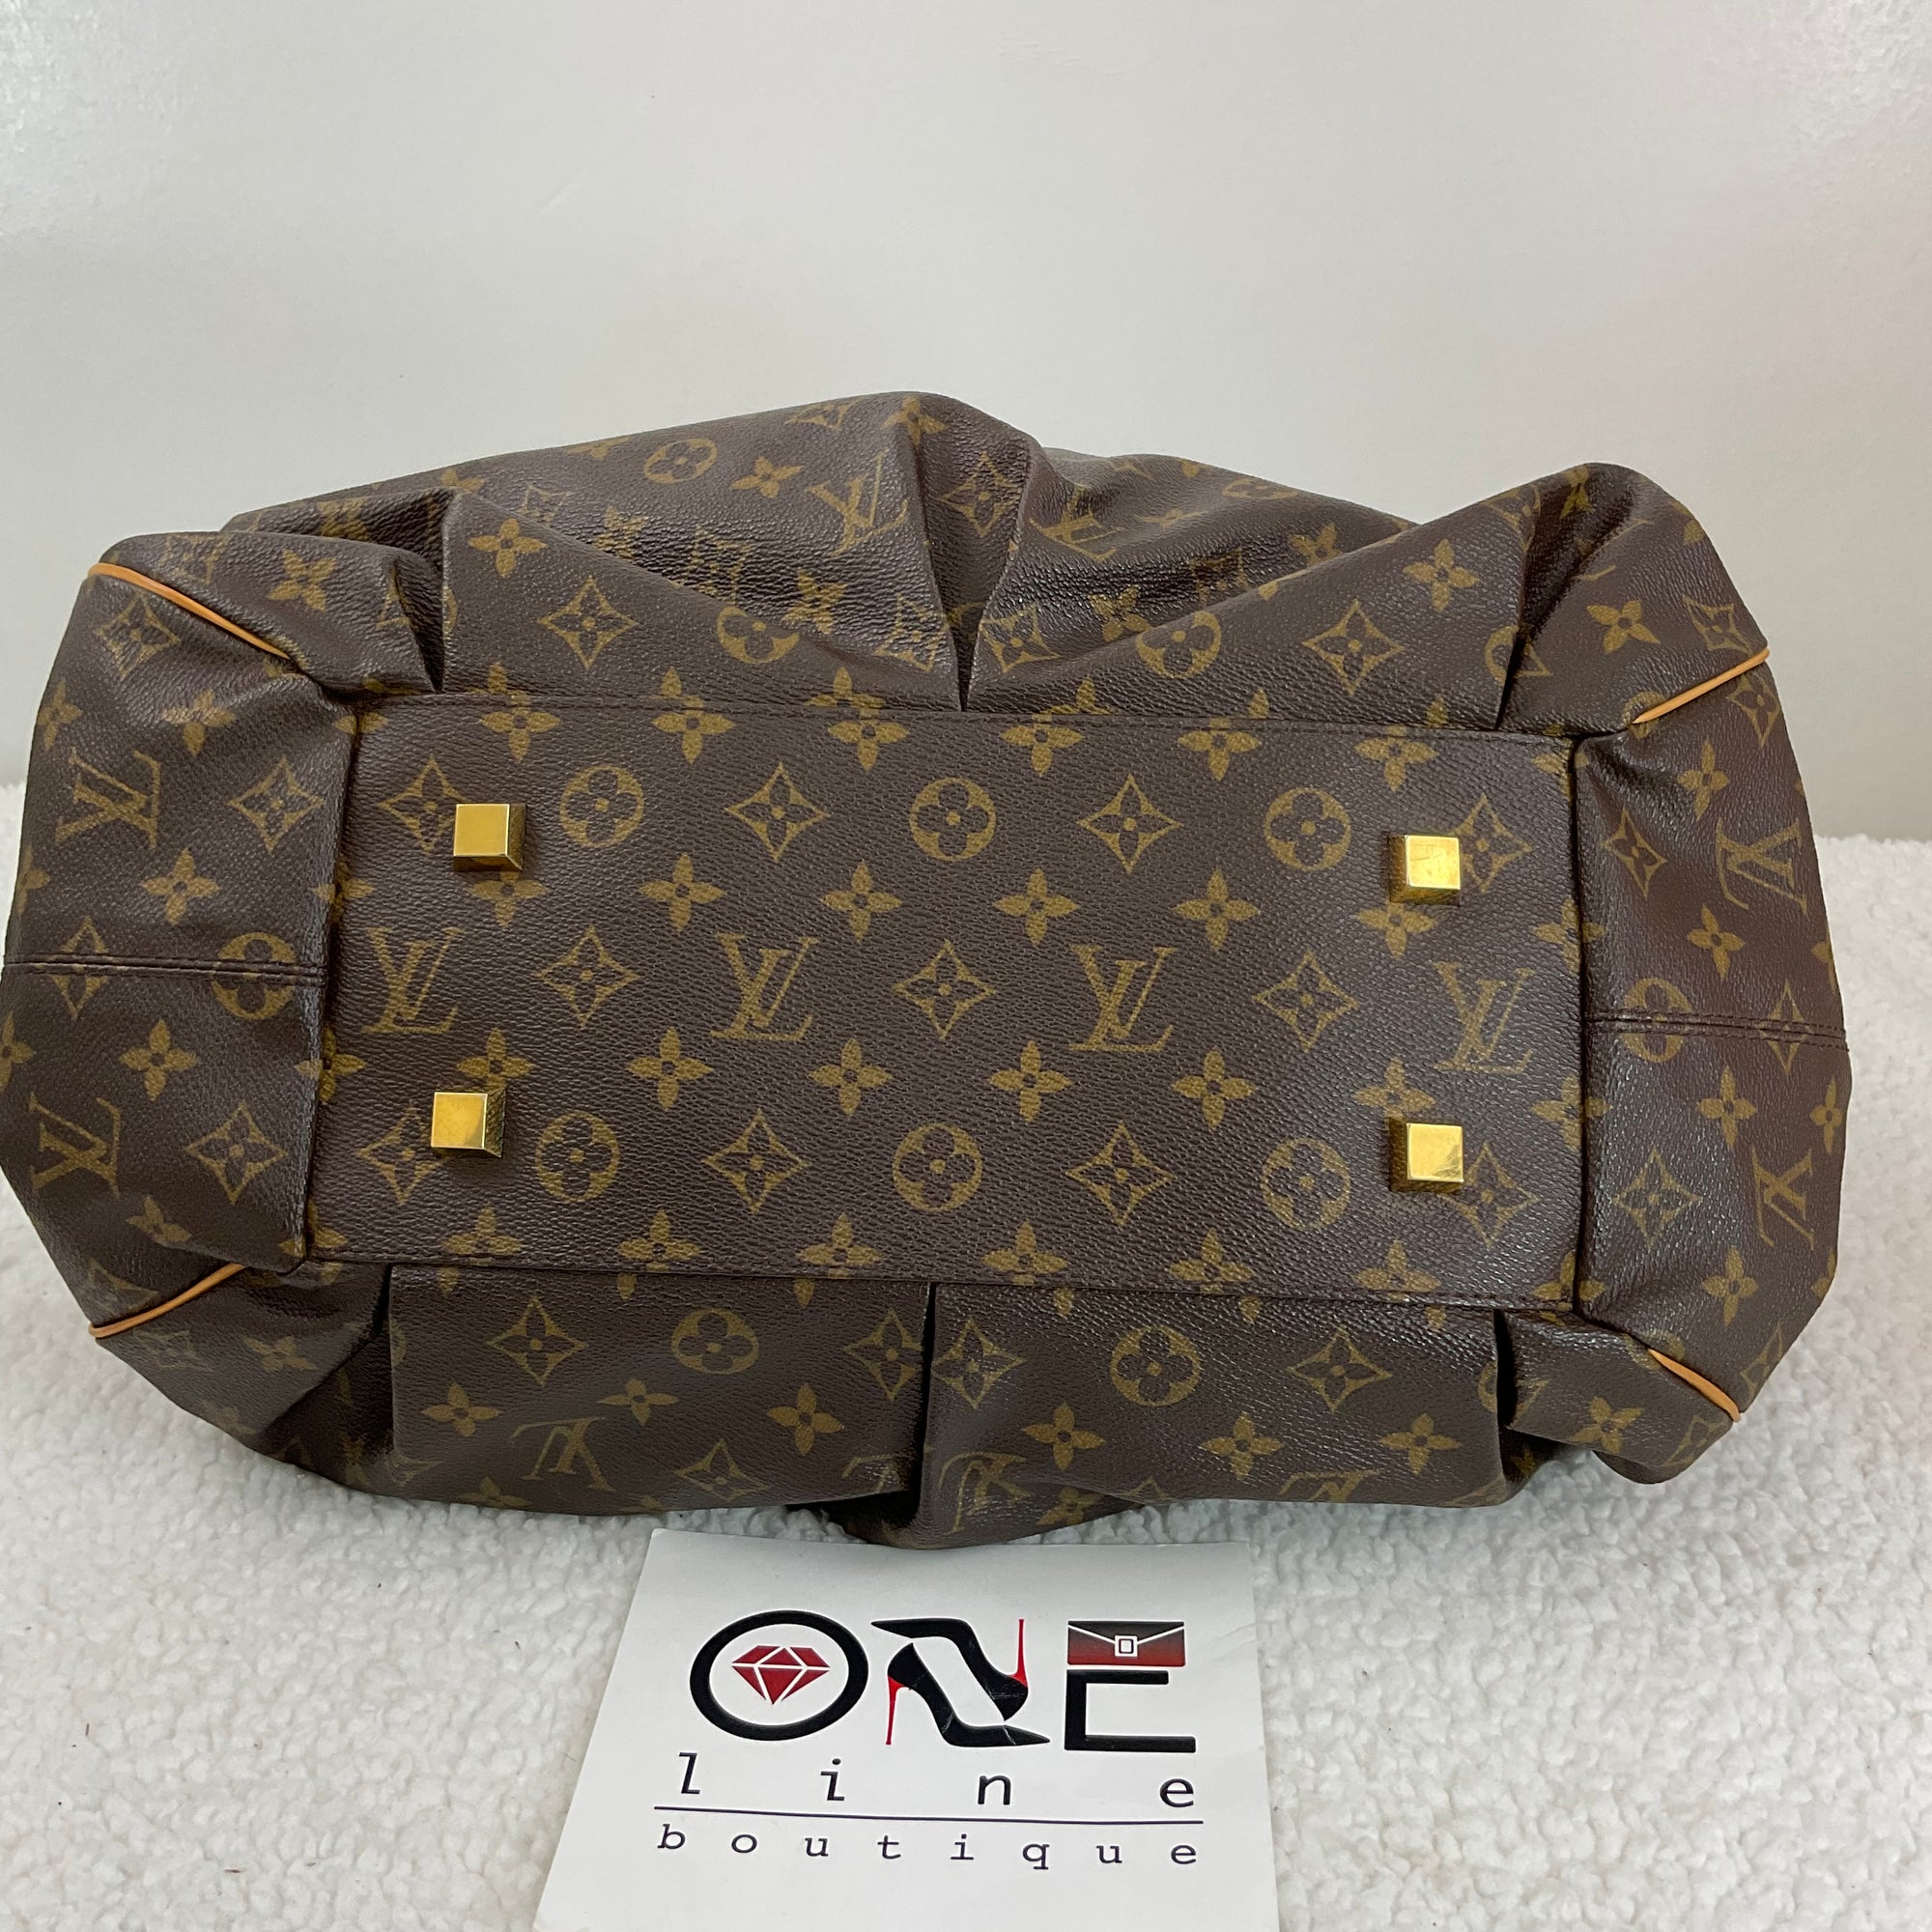 Irene Louis Vuitton Pre-Own - OneLine Boutique